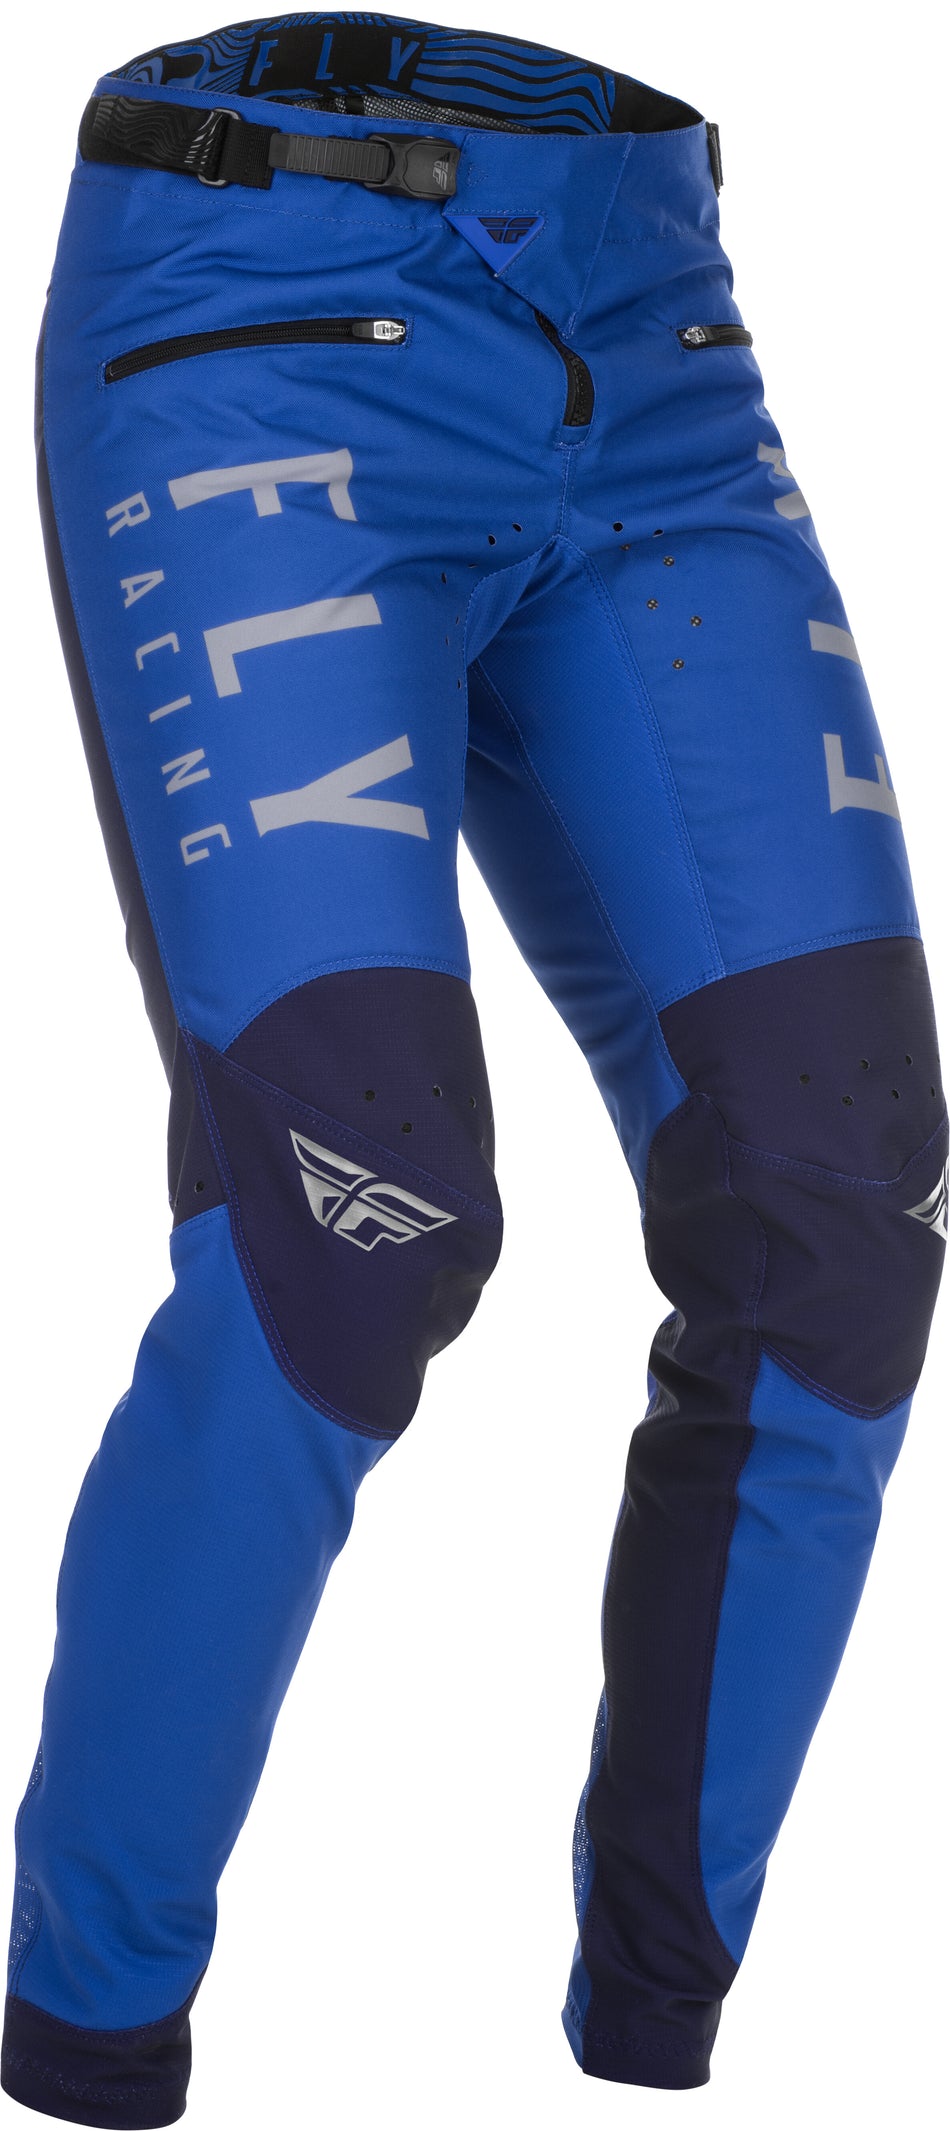 FLY RACING Kinetic Bicycle Pants Blue Sz 38 374-04138